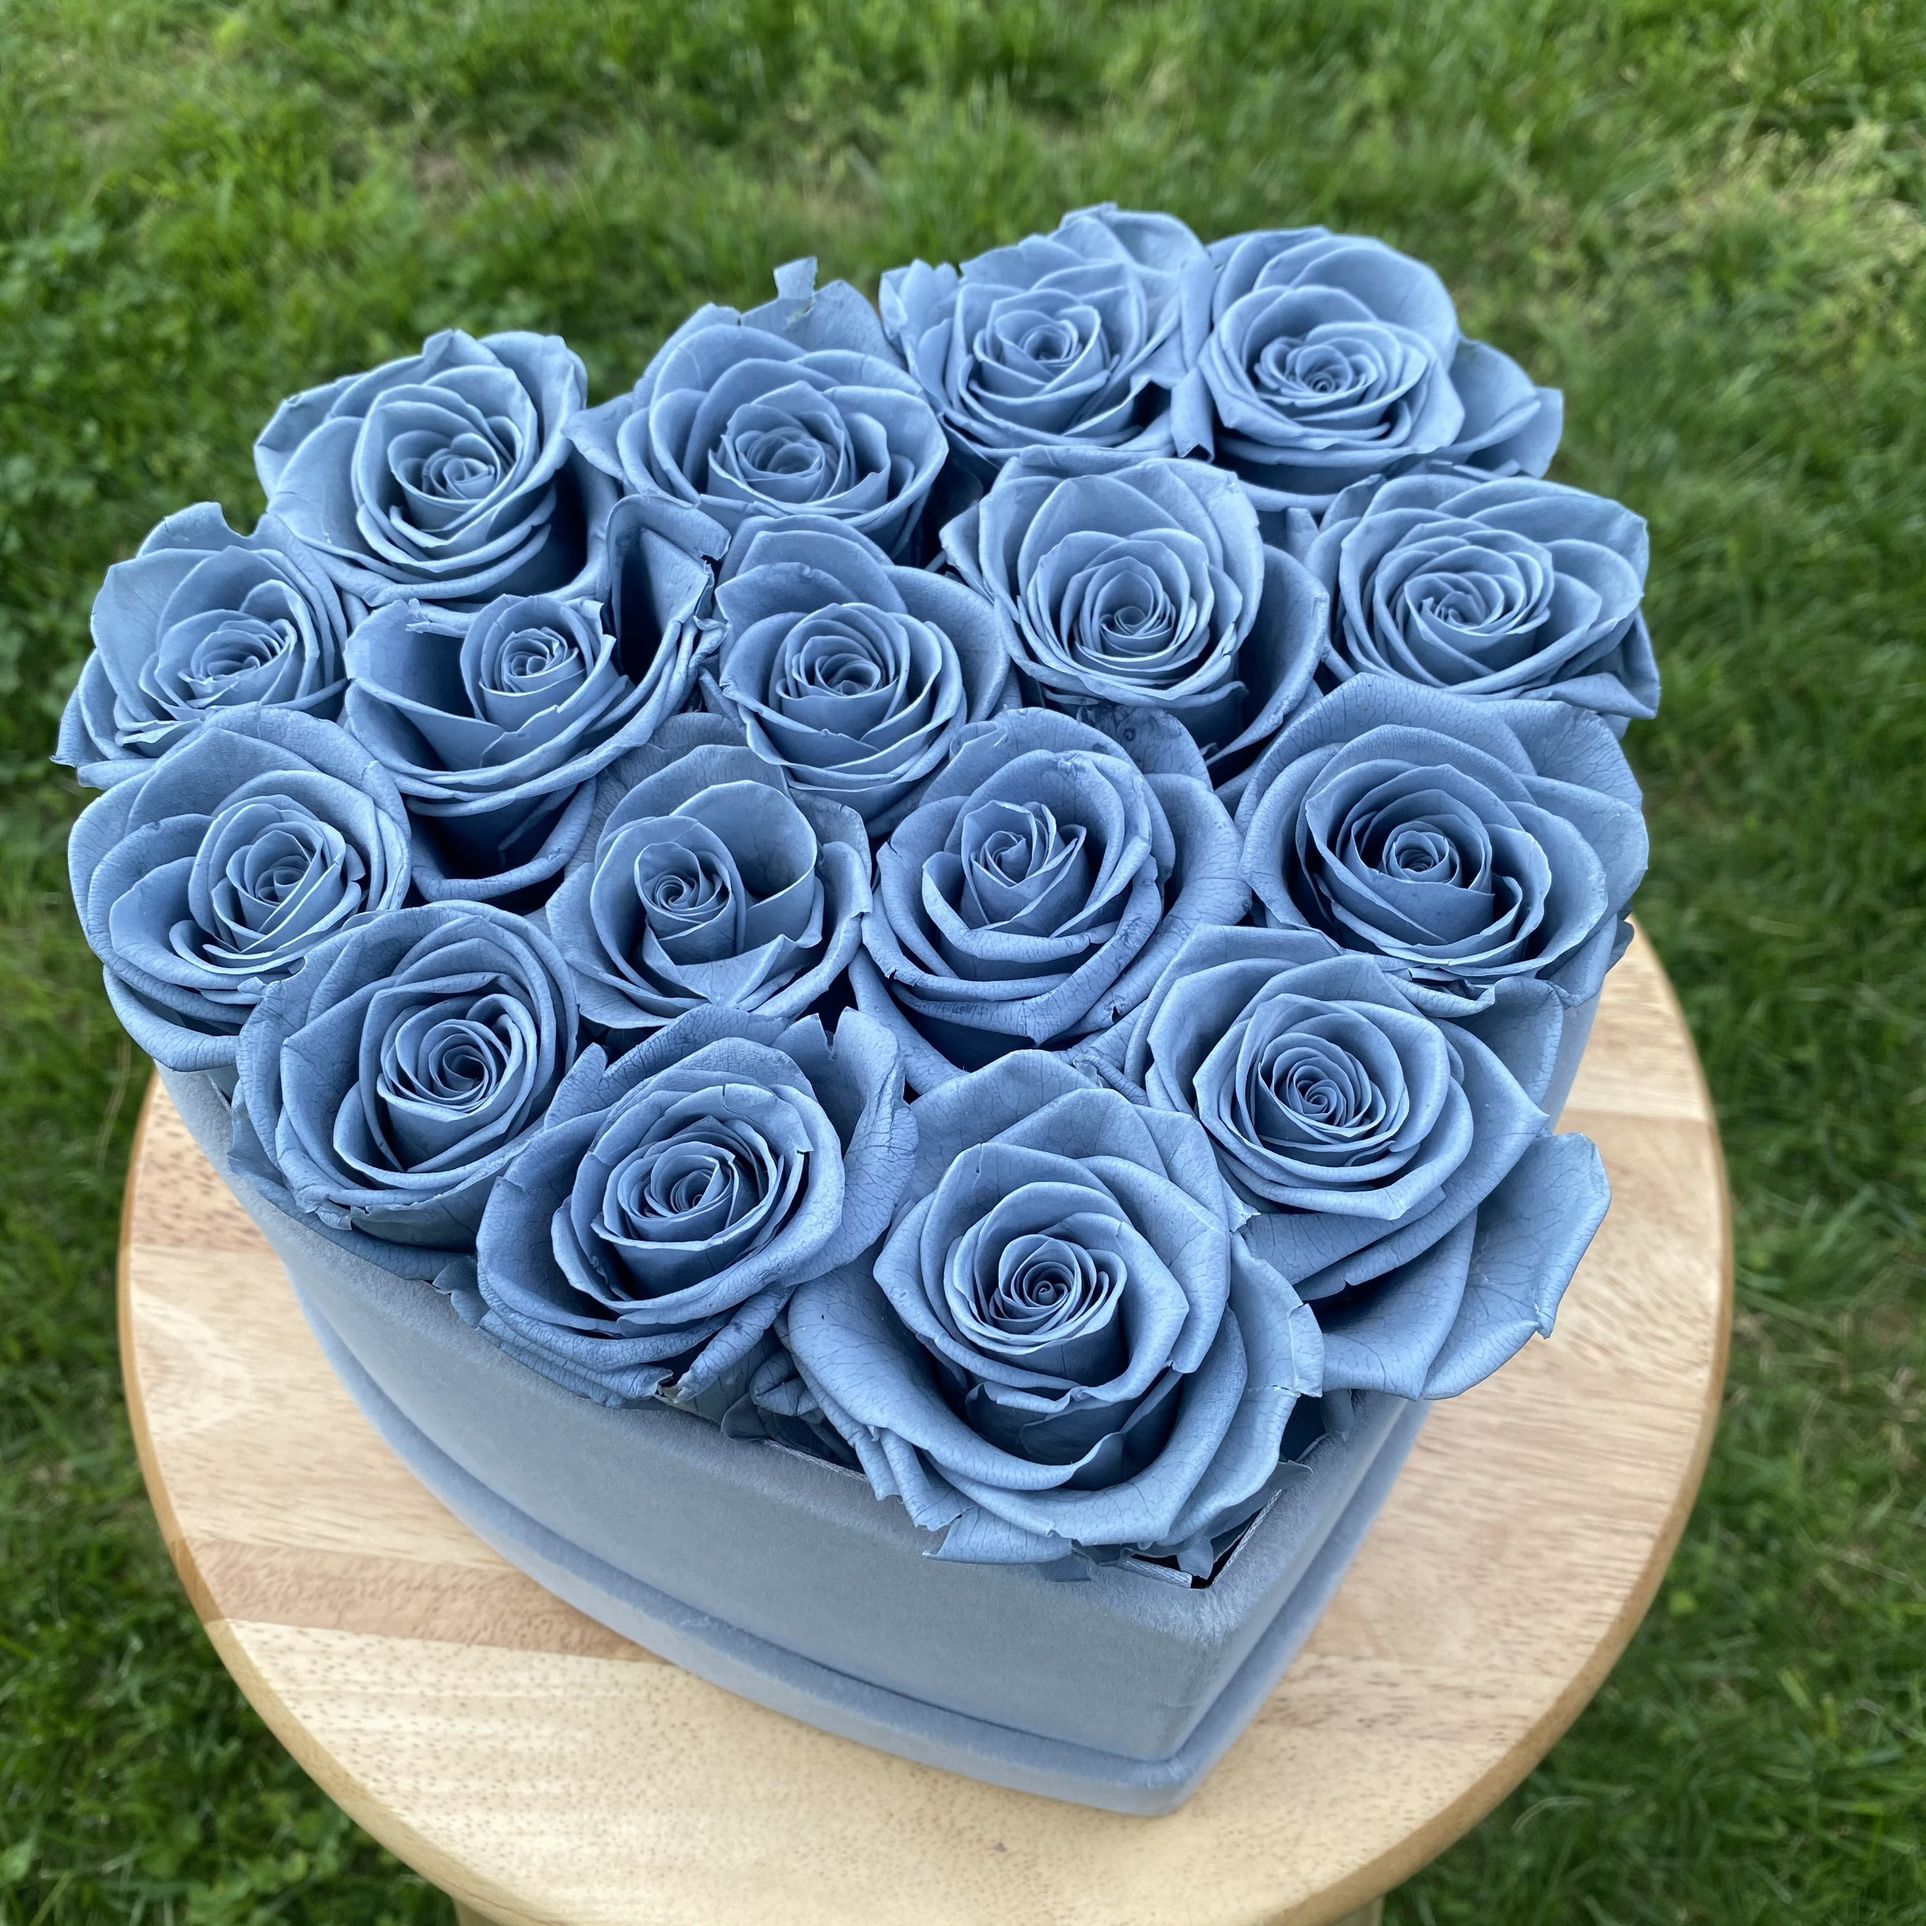 Grey Velvet Heart Shape Eternal Box Roses birthday prom Gift Real Preserved Flowers Long Lasting present Bday anniversary immortal roses 